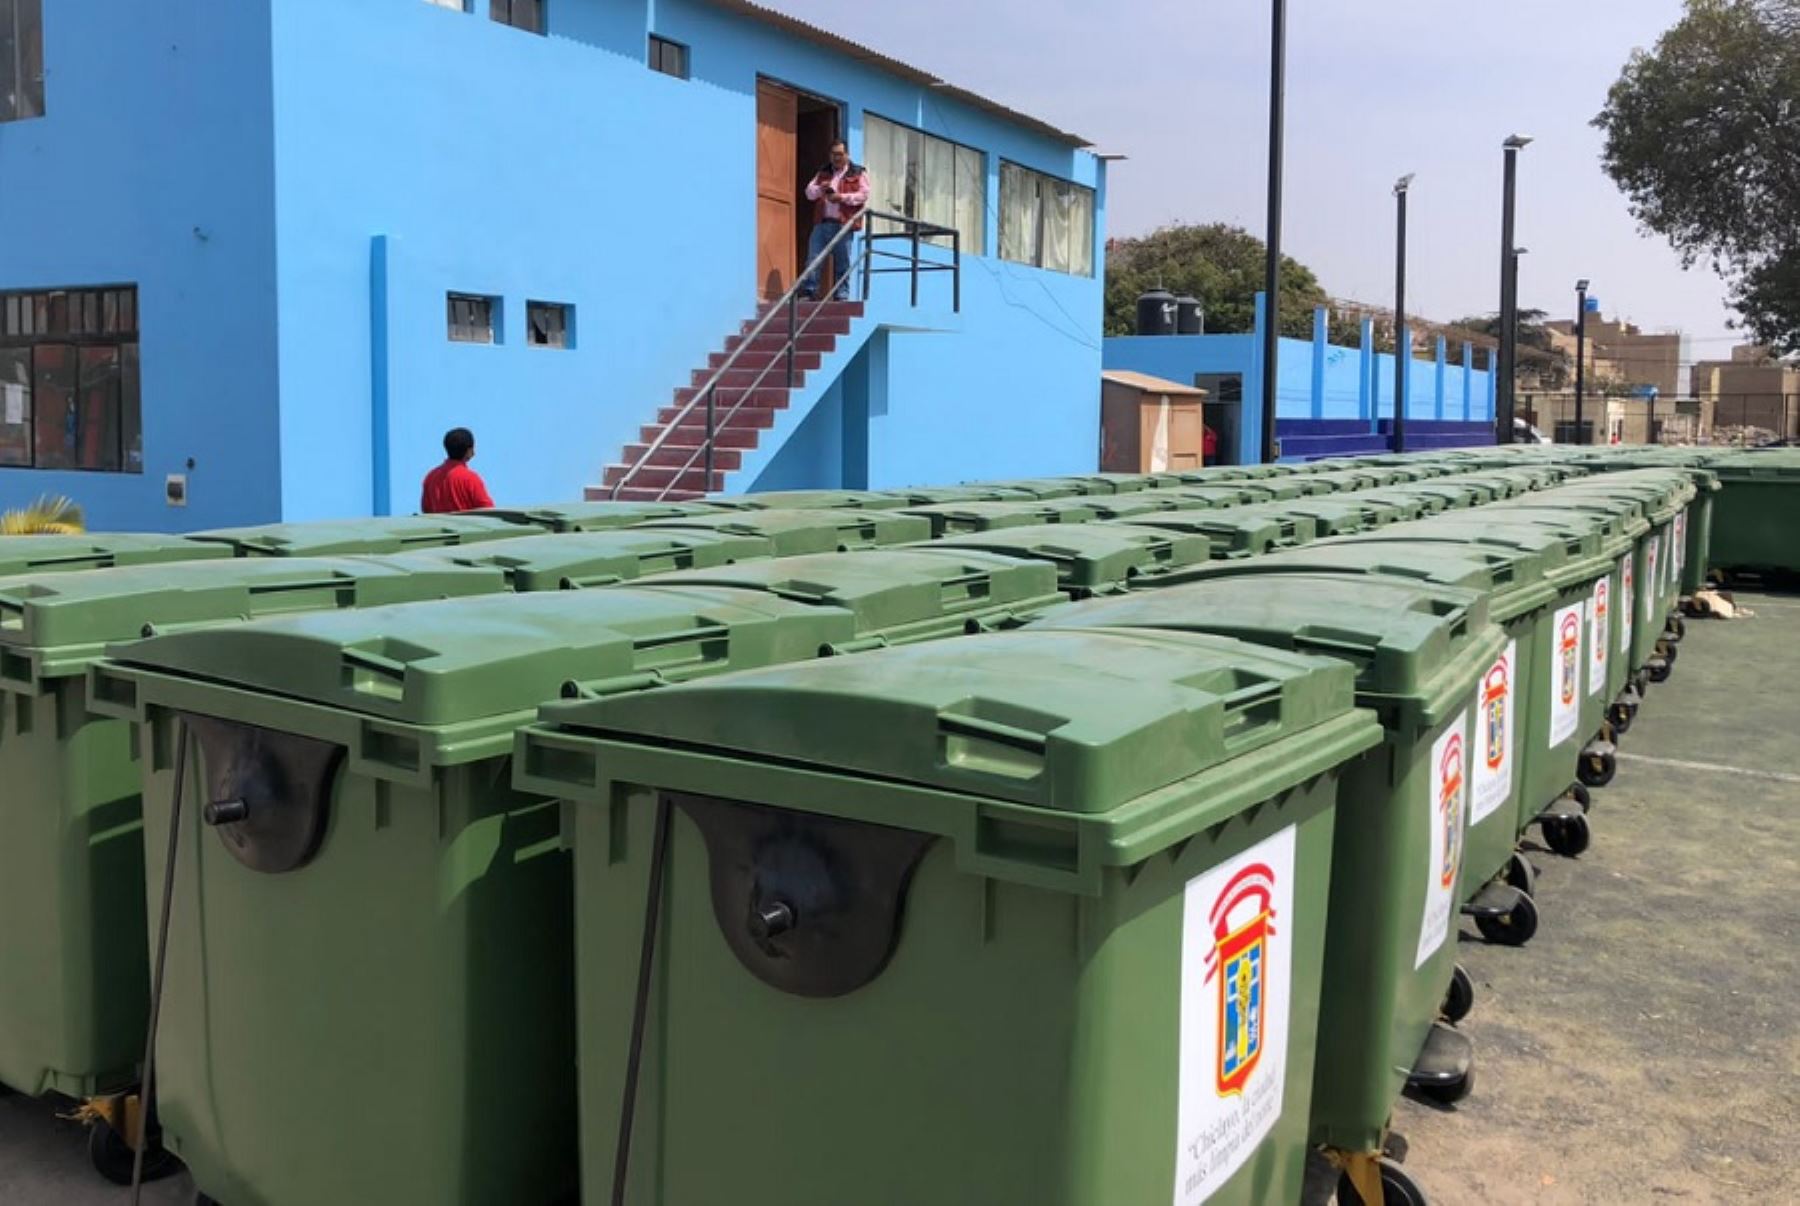 La municipalidad provincial de Chiclayo adquirió, mediante un proceso de adjudicación simplificada, 600 contenedores para limpieza pública.